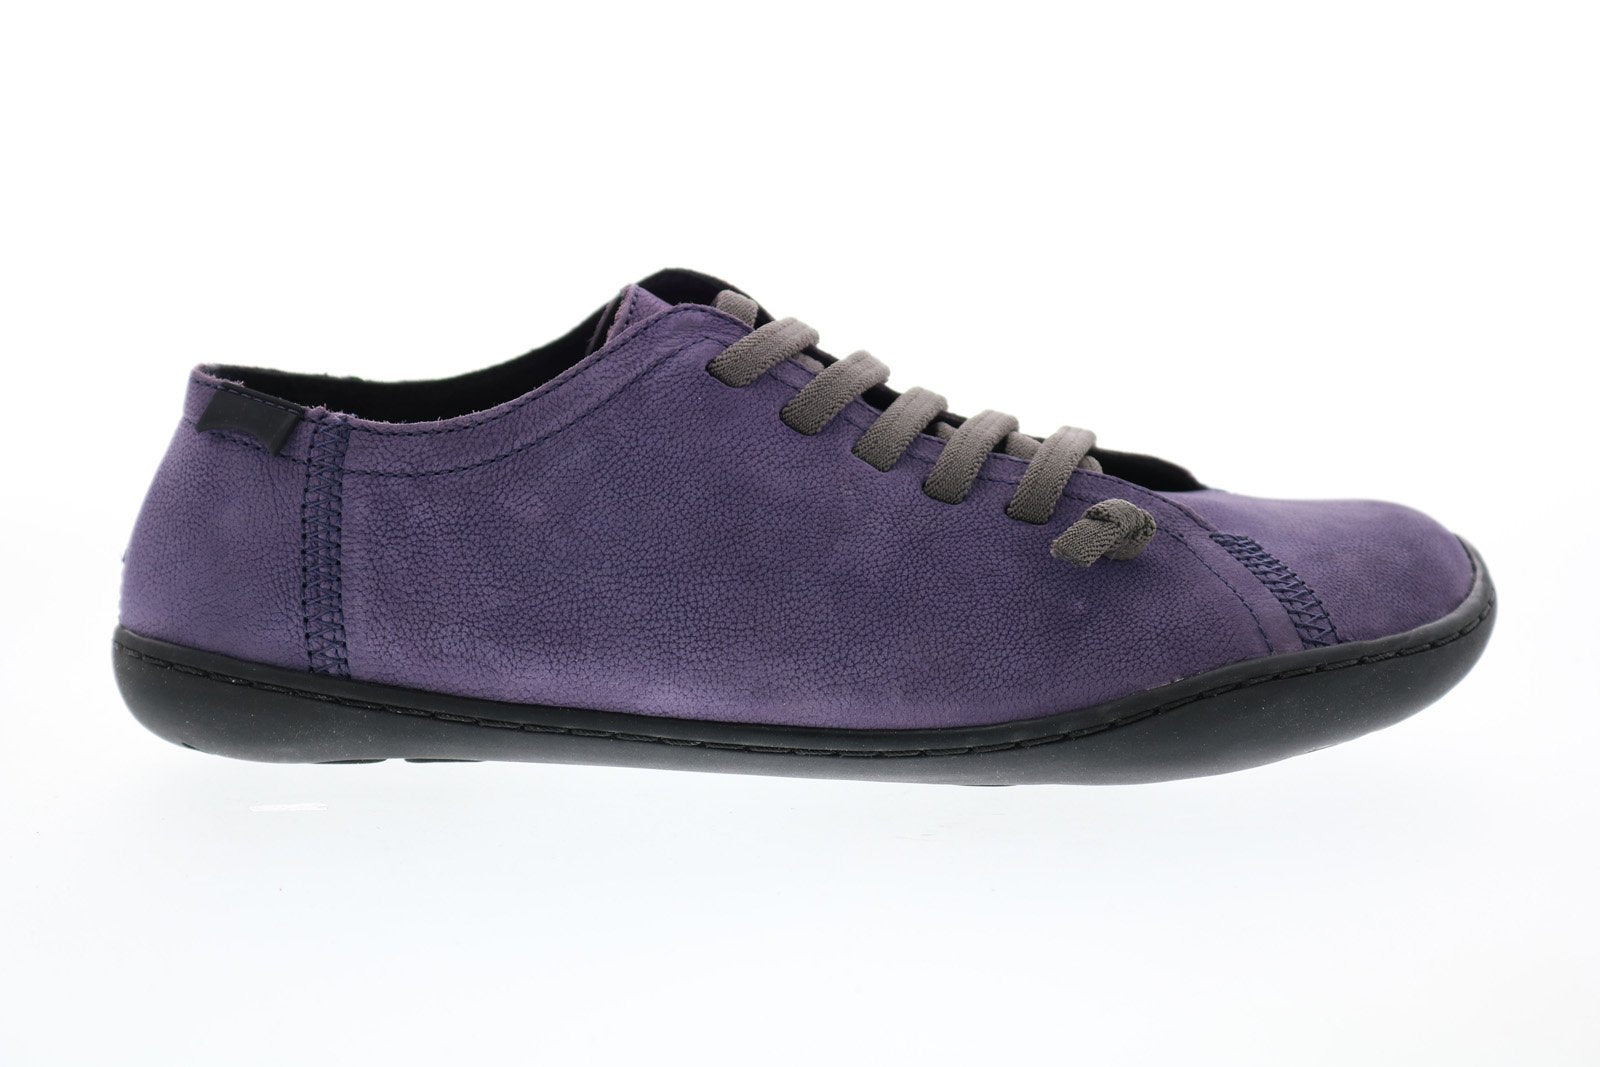 Buy Camper, 20848 Peu Cami Women's Sneakers, black-blue » at MBaetz online